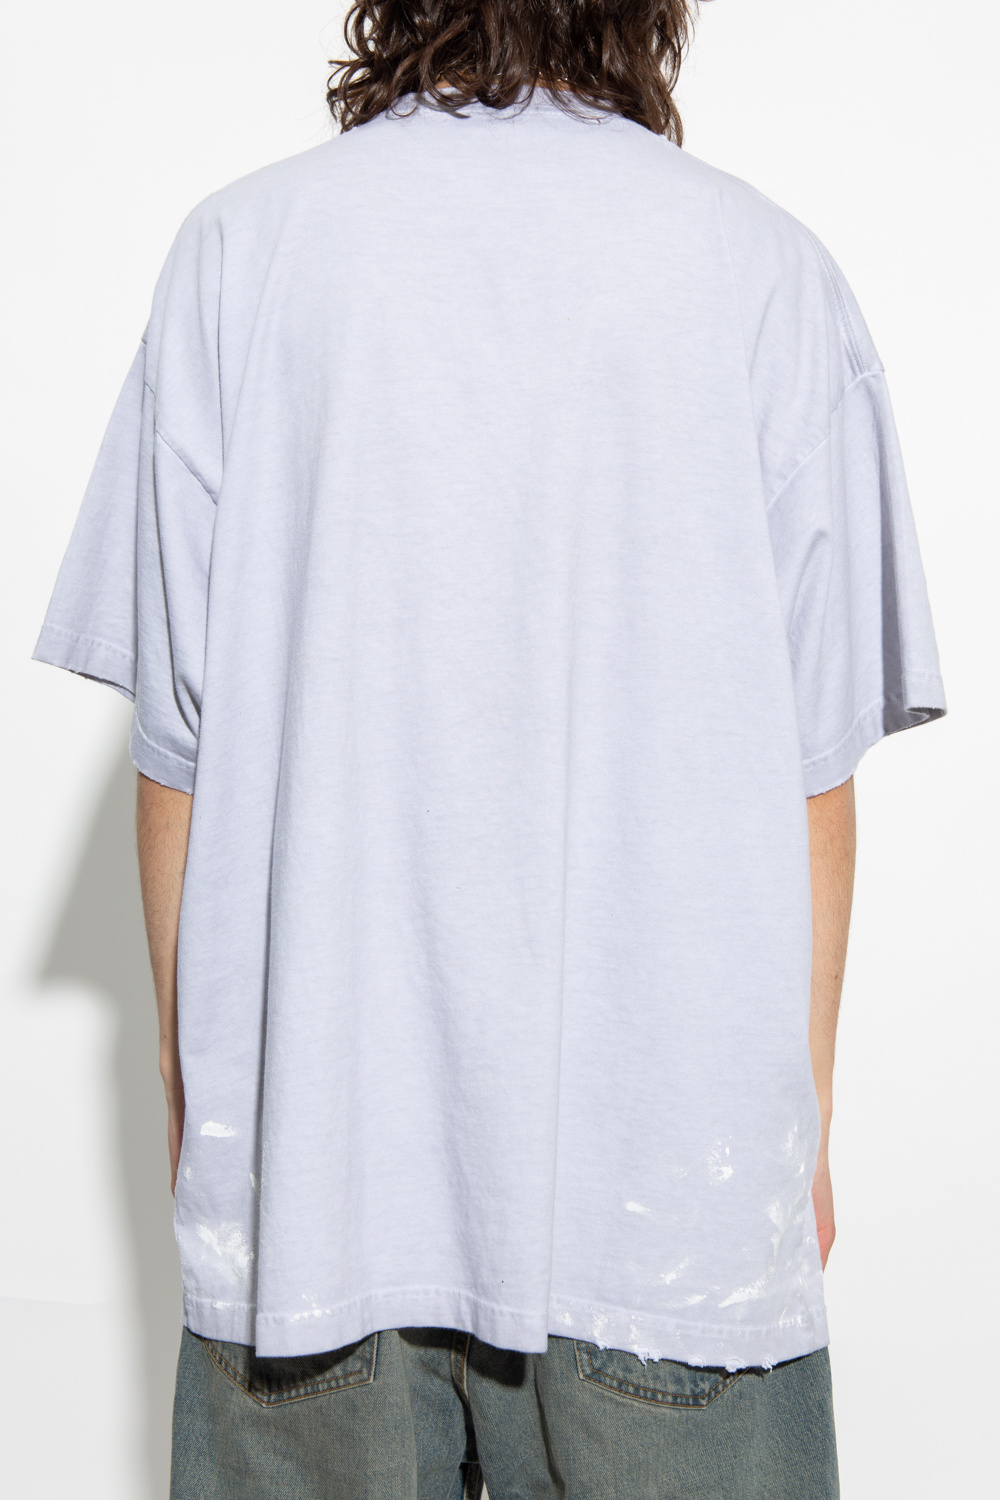 Balenciaga Printed Sleeveless Crew Neck T-Shirt